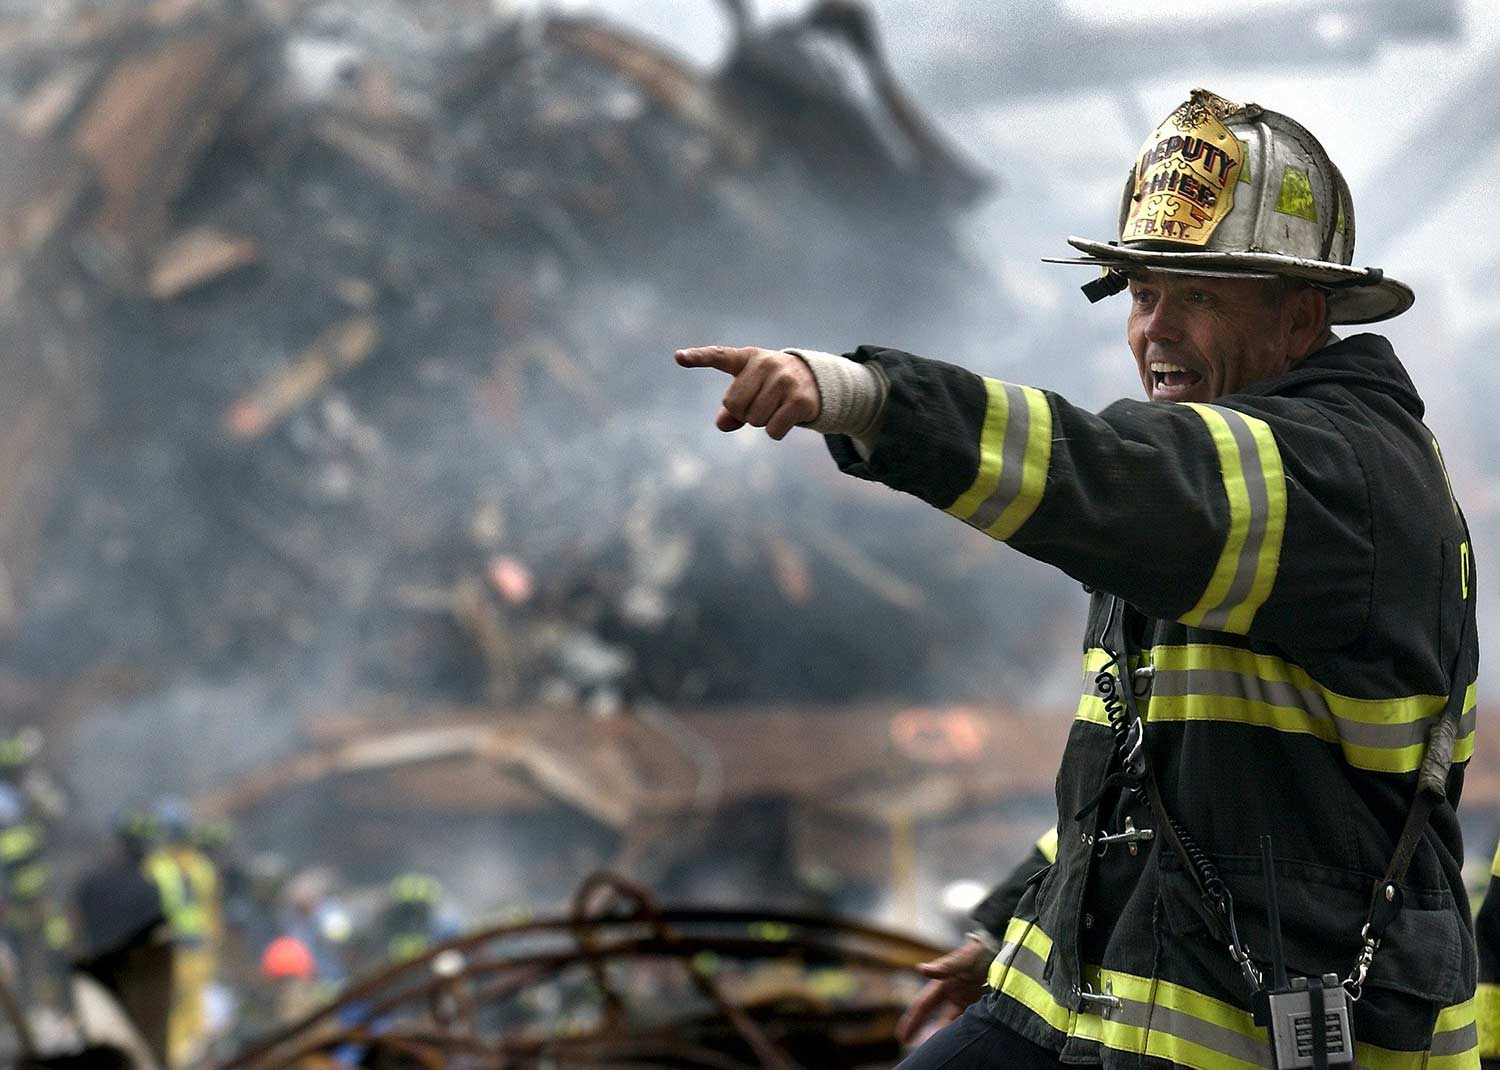 Fireman in the rubble.